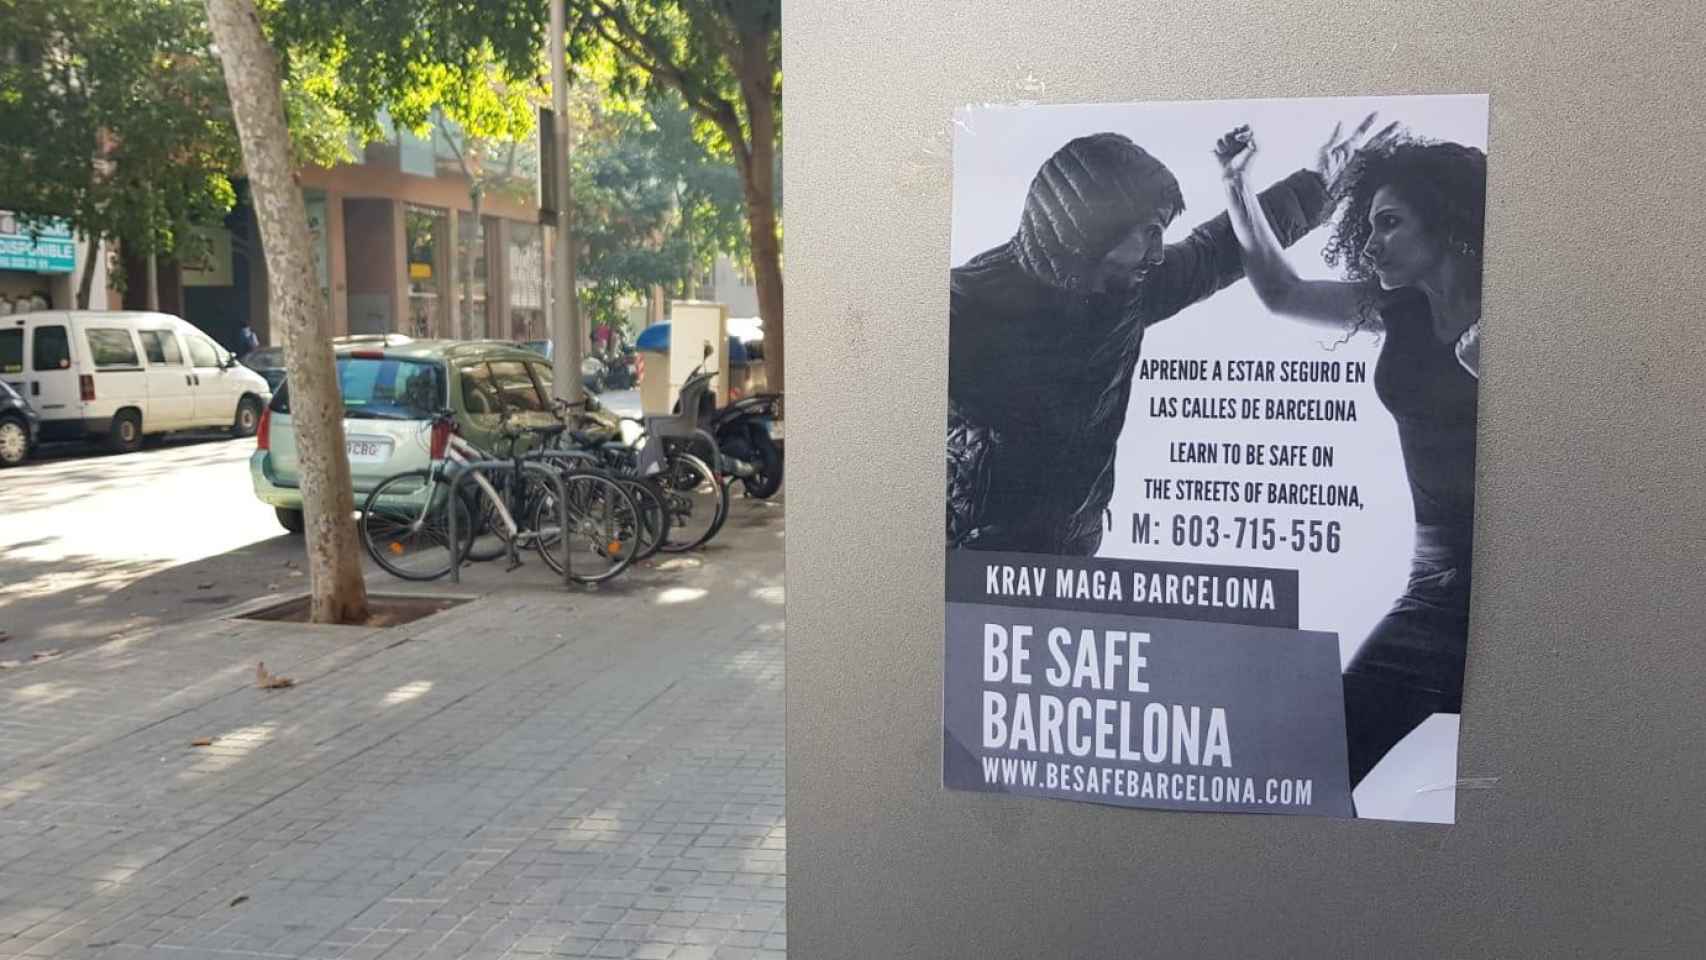 Be Safe Barcelona, aprende a estar seguro